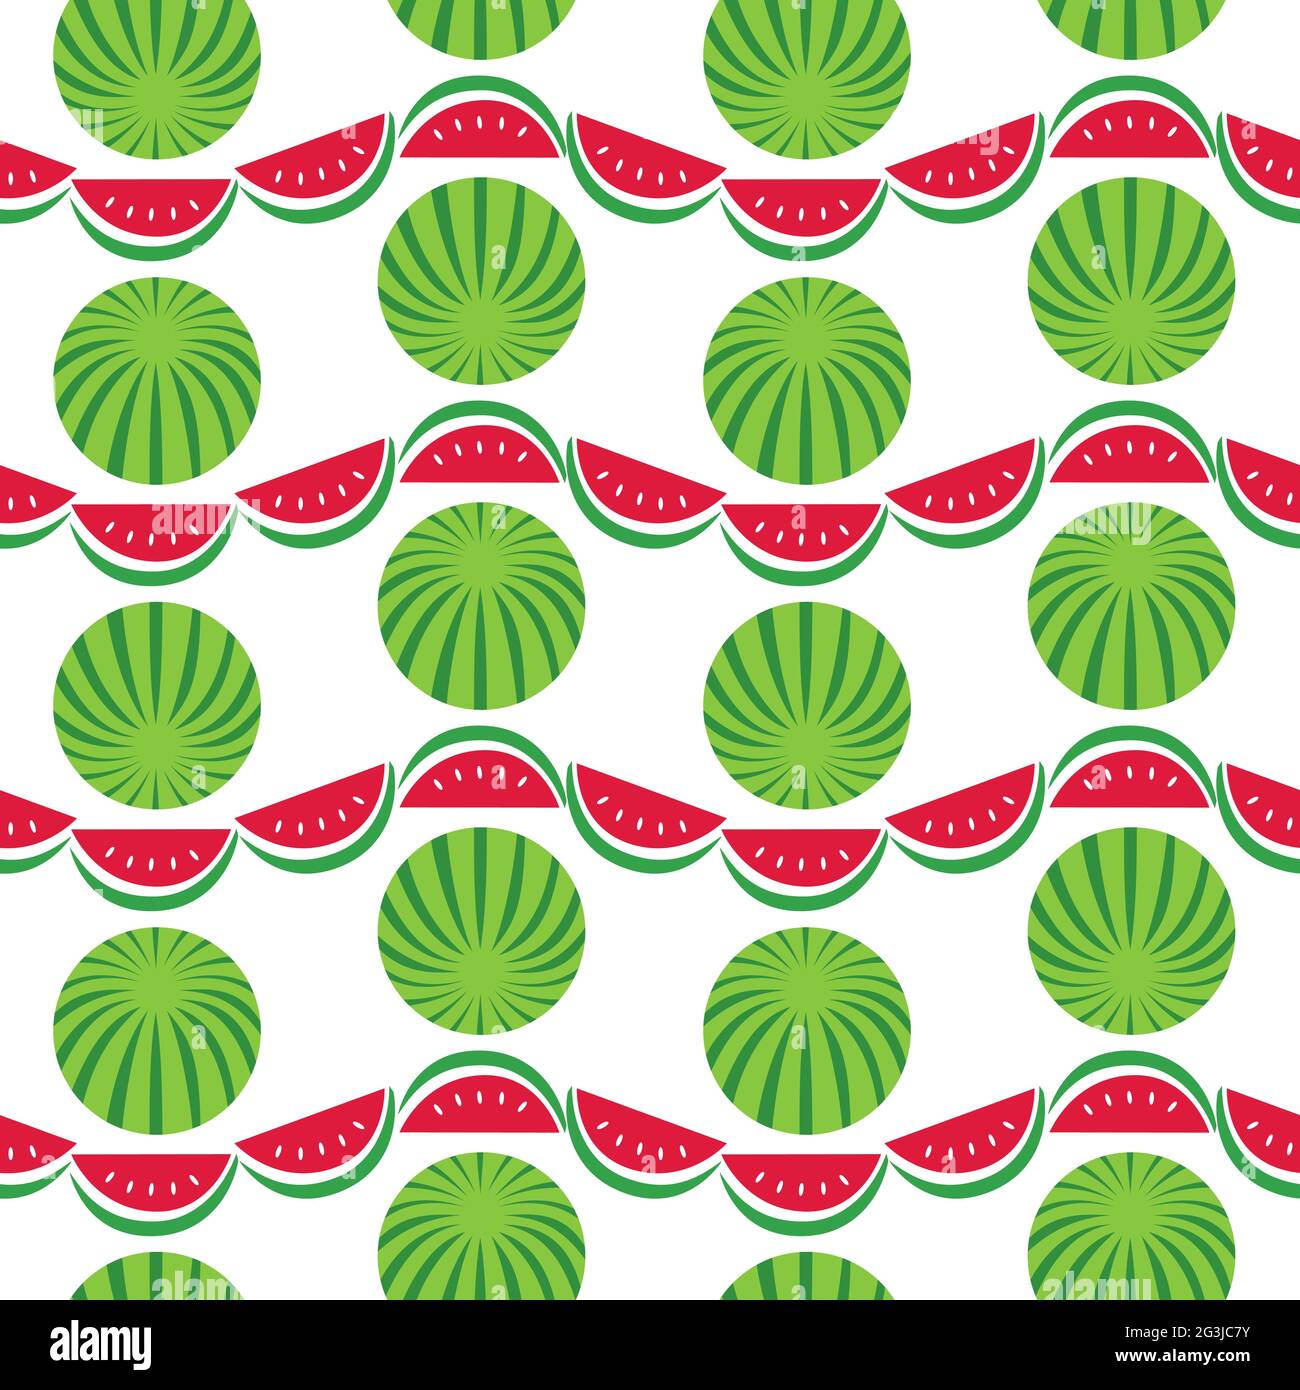 Wassermelonen geometrische Vektor-Muster nahtlose Muster Hintergrund. Stock Vektor